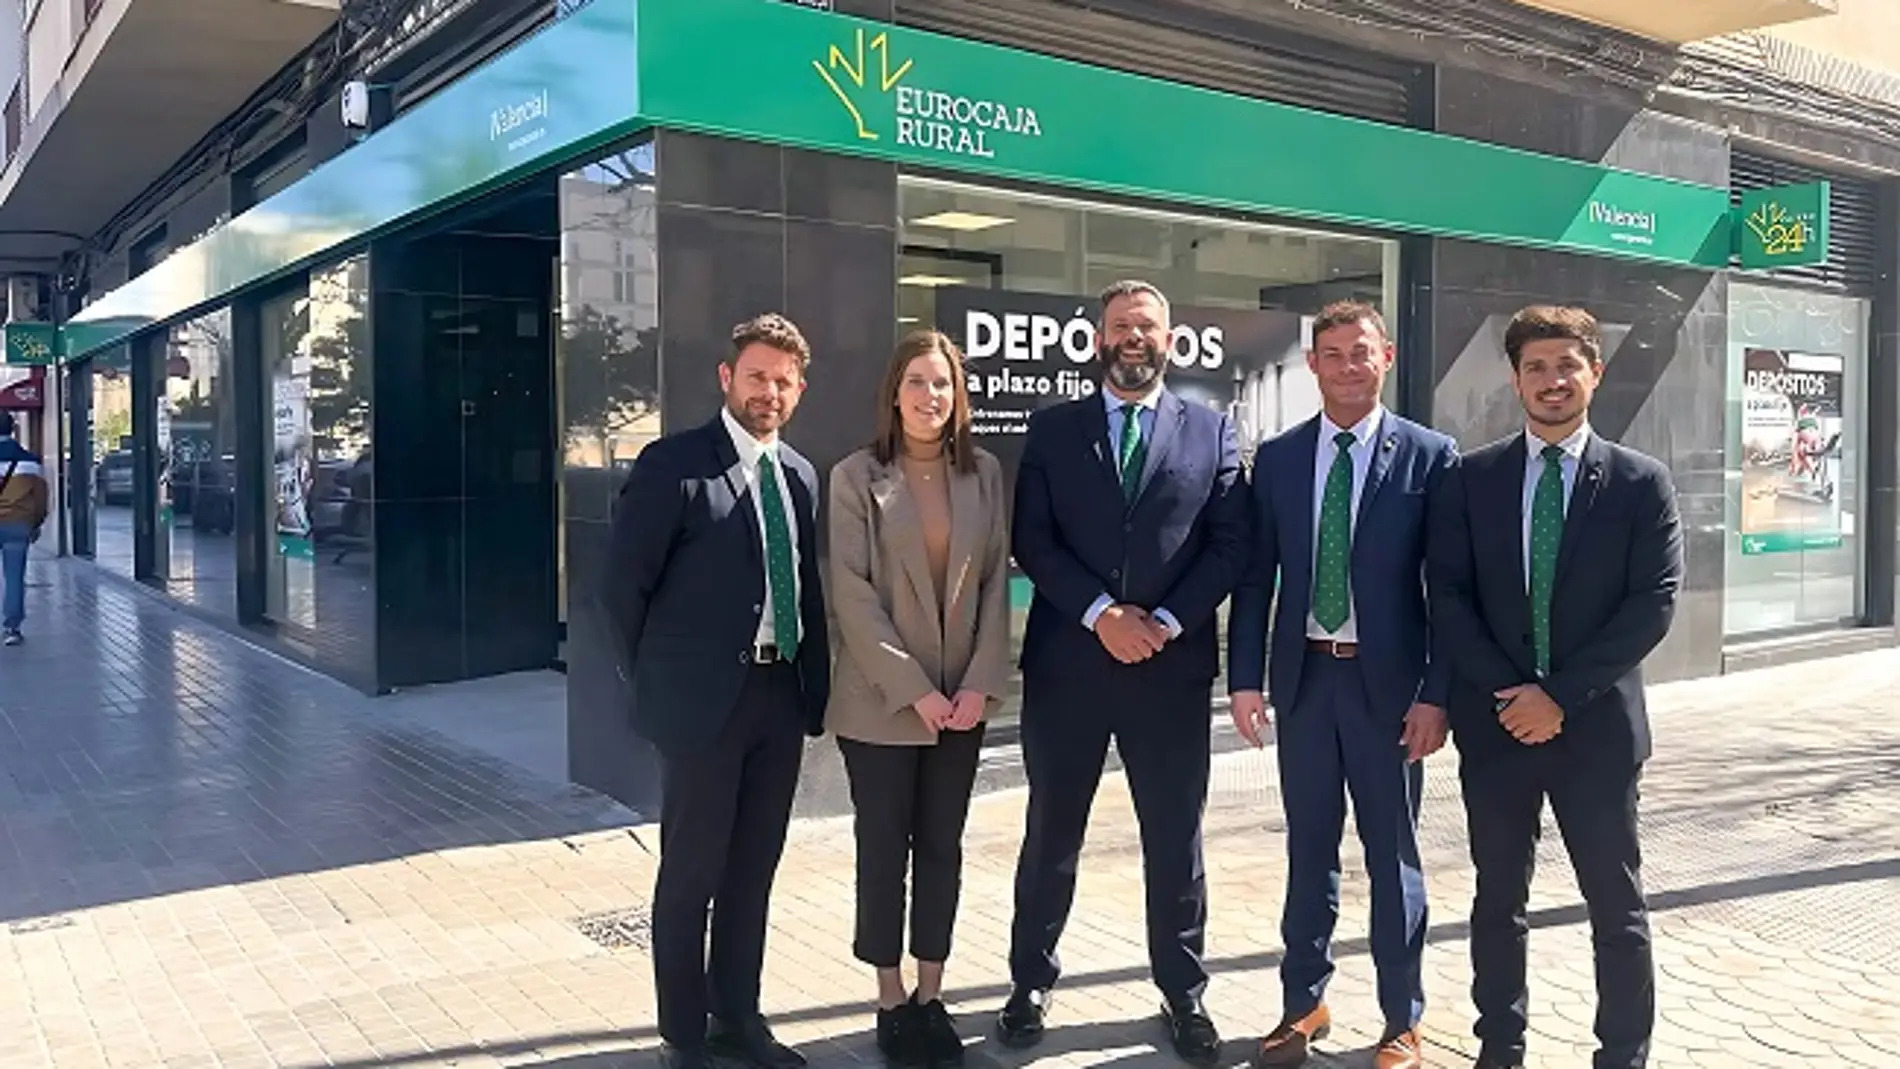 La entidad abre su tercera oficina en Valencia capital ratificando su vocación de servicio y atención personalizada